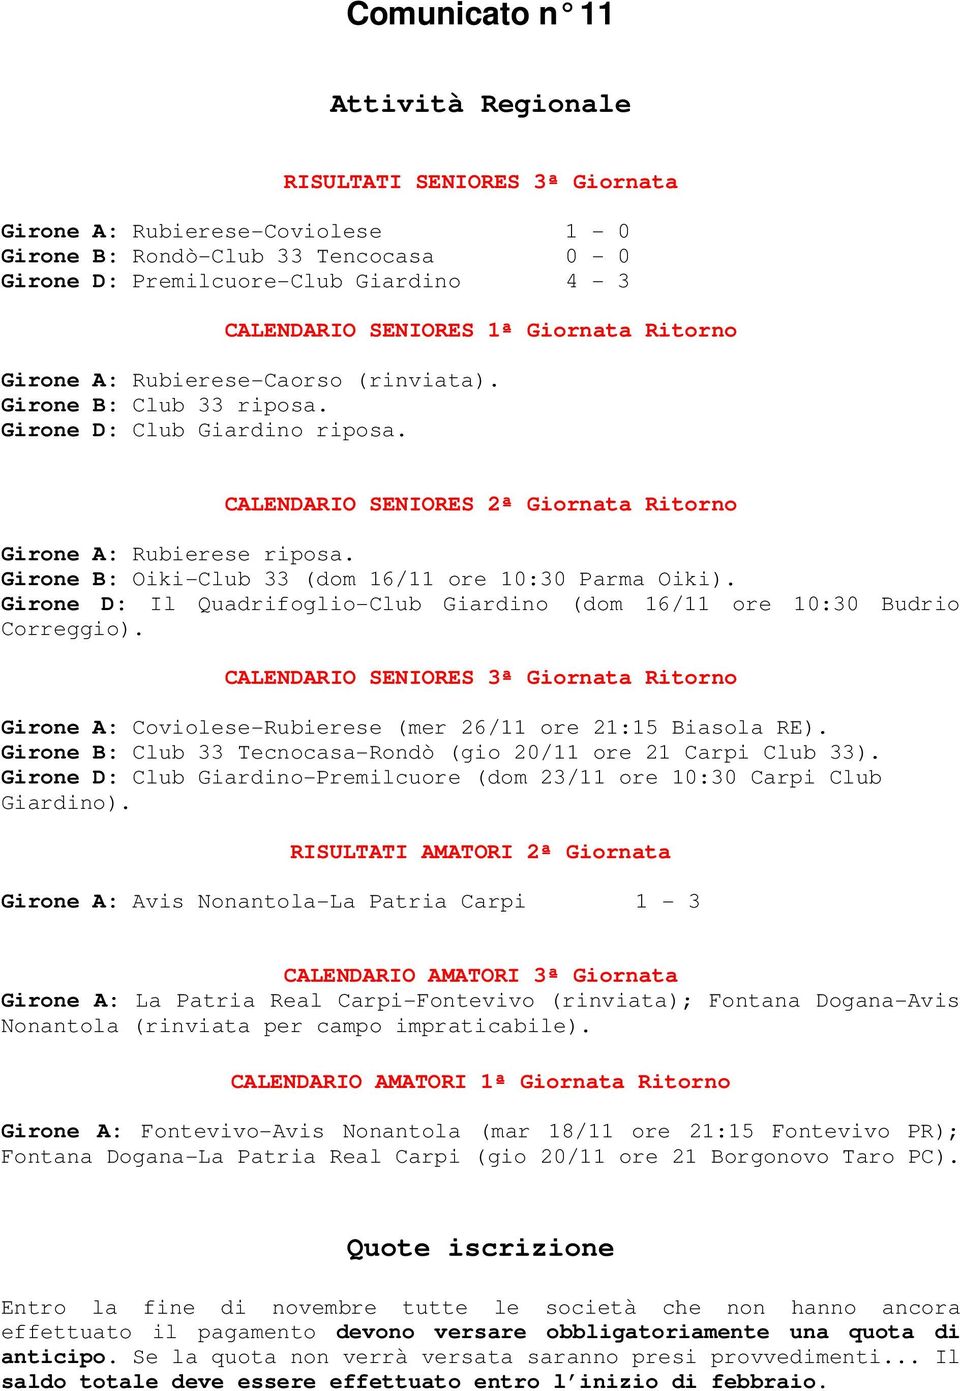 Girone B: Oiki-Club 33 (dom 16/11 ore 10:30 Parma Oiki). Girone D: Il Quadrifoglio-Club Giardino (dom 16/11 ore 10:30 Budrio Correggio).